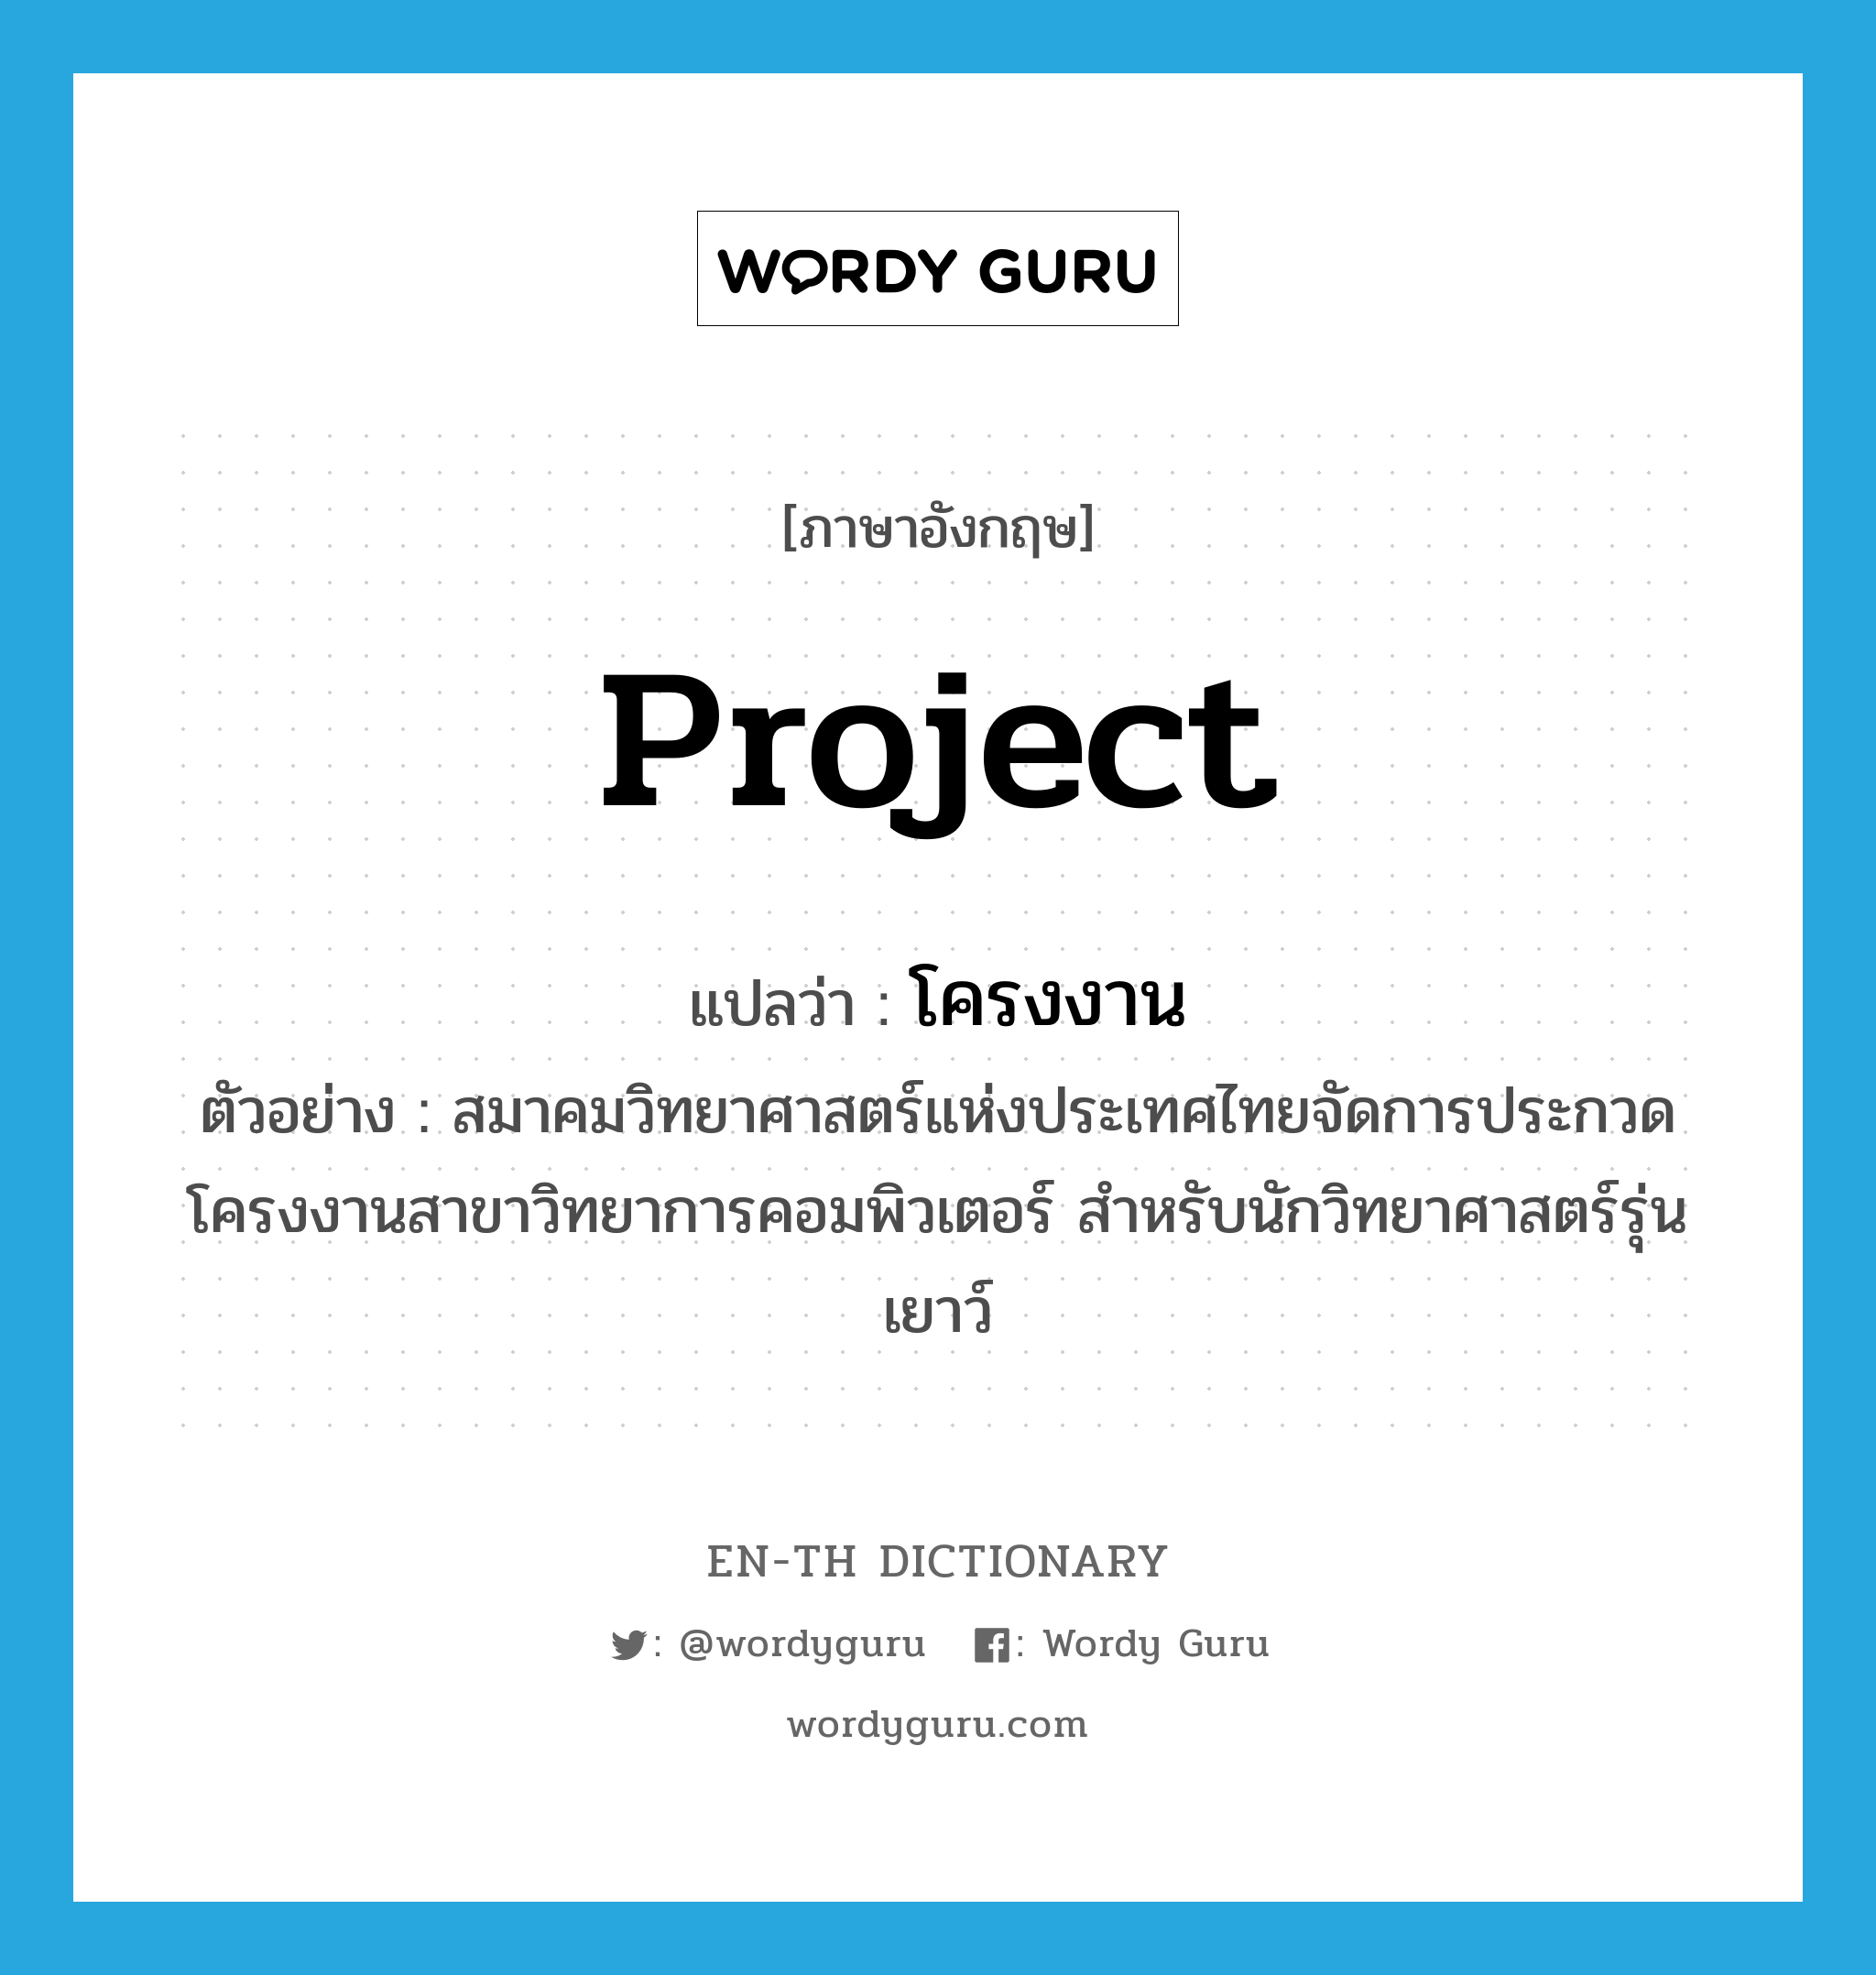 project แปลว่า?, คำศัพท์ภาษาอังกฤษ project แปลว่า โครงงาน ประเภท N ตัวอย่าง สมาคมวิทยาศาสตร์แห่งประเทศไทยจัดการประกวดโครงงานสาขาวิทยาการคอมพิวเตอร์ สำหรับนักวิทยาศาสตร์รุ่นเยาว์ หมวด N